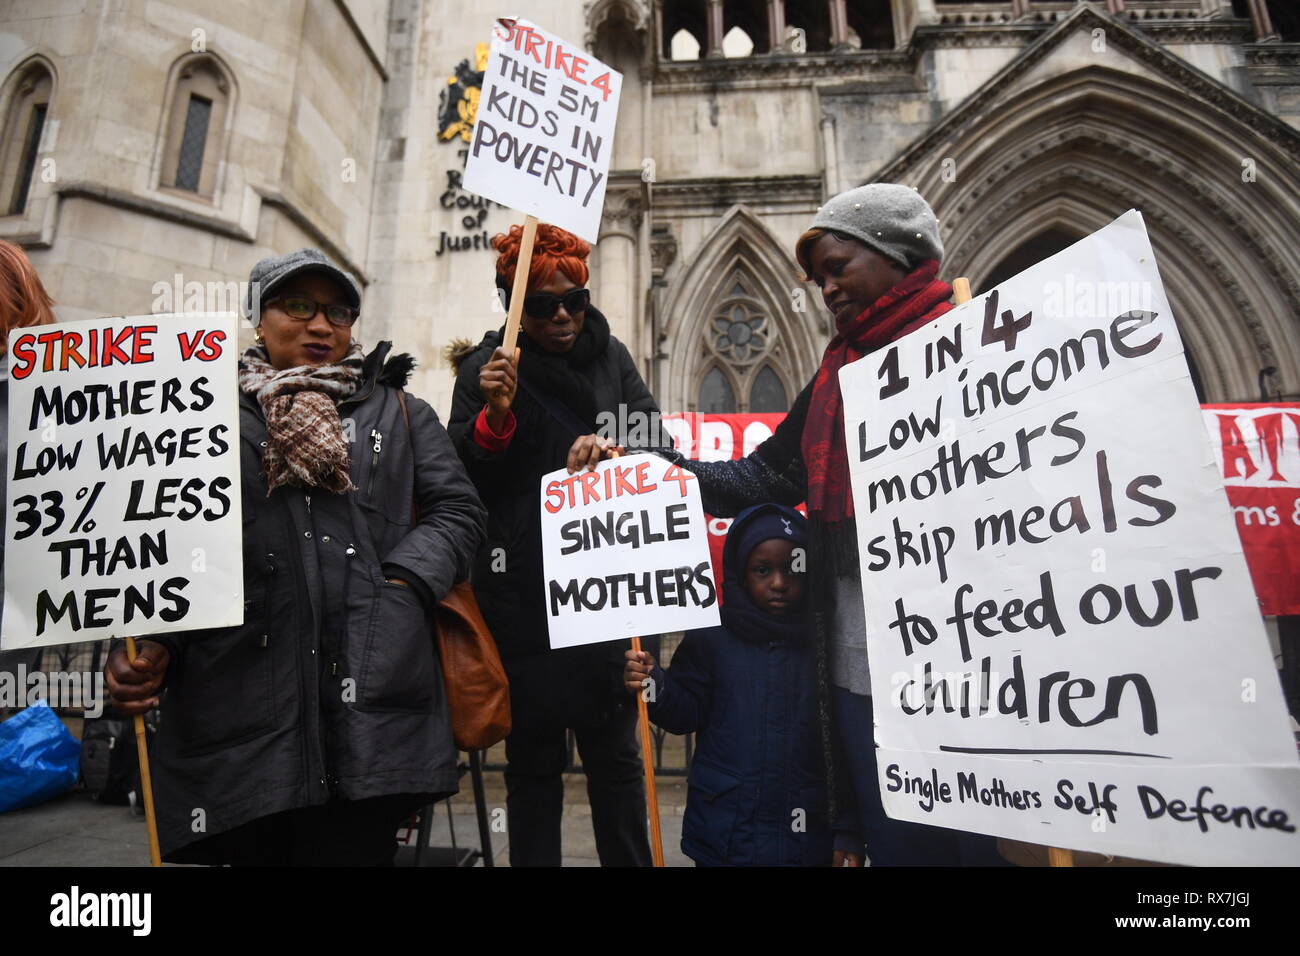 Die Rechte der Frauen Demonstration der Frauen internationale Streik Gruppe außerhalb der High Court in London am Internationalen Frauentag organisiert. Stockfoto